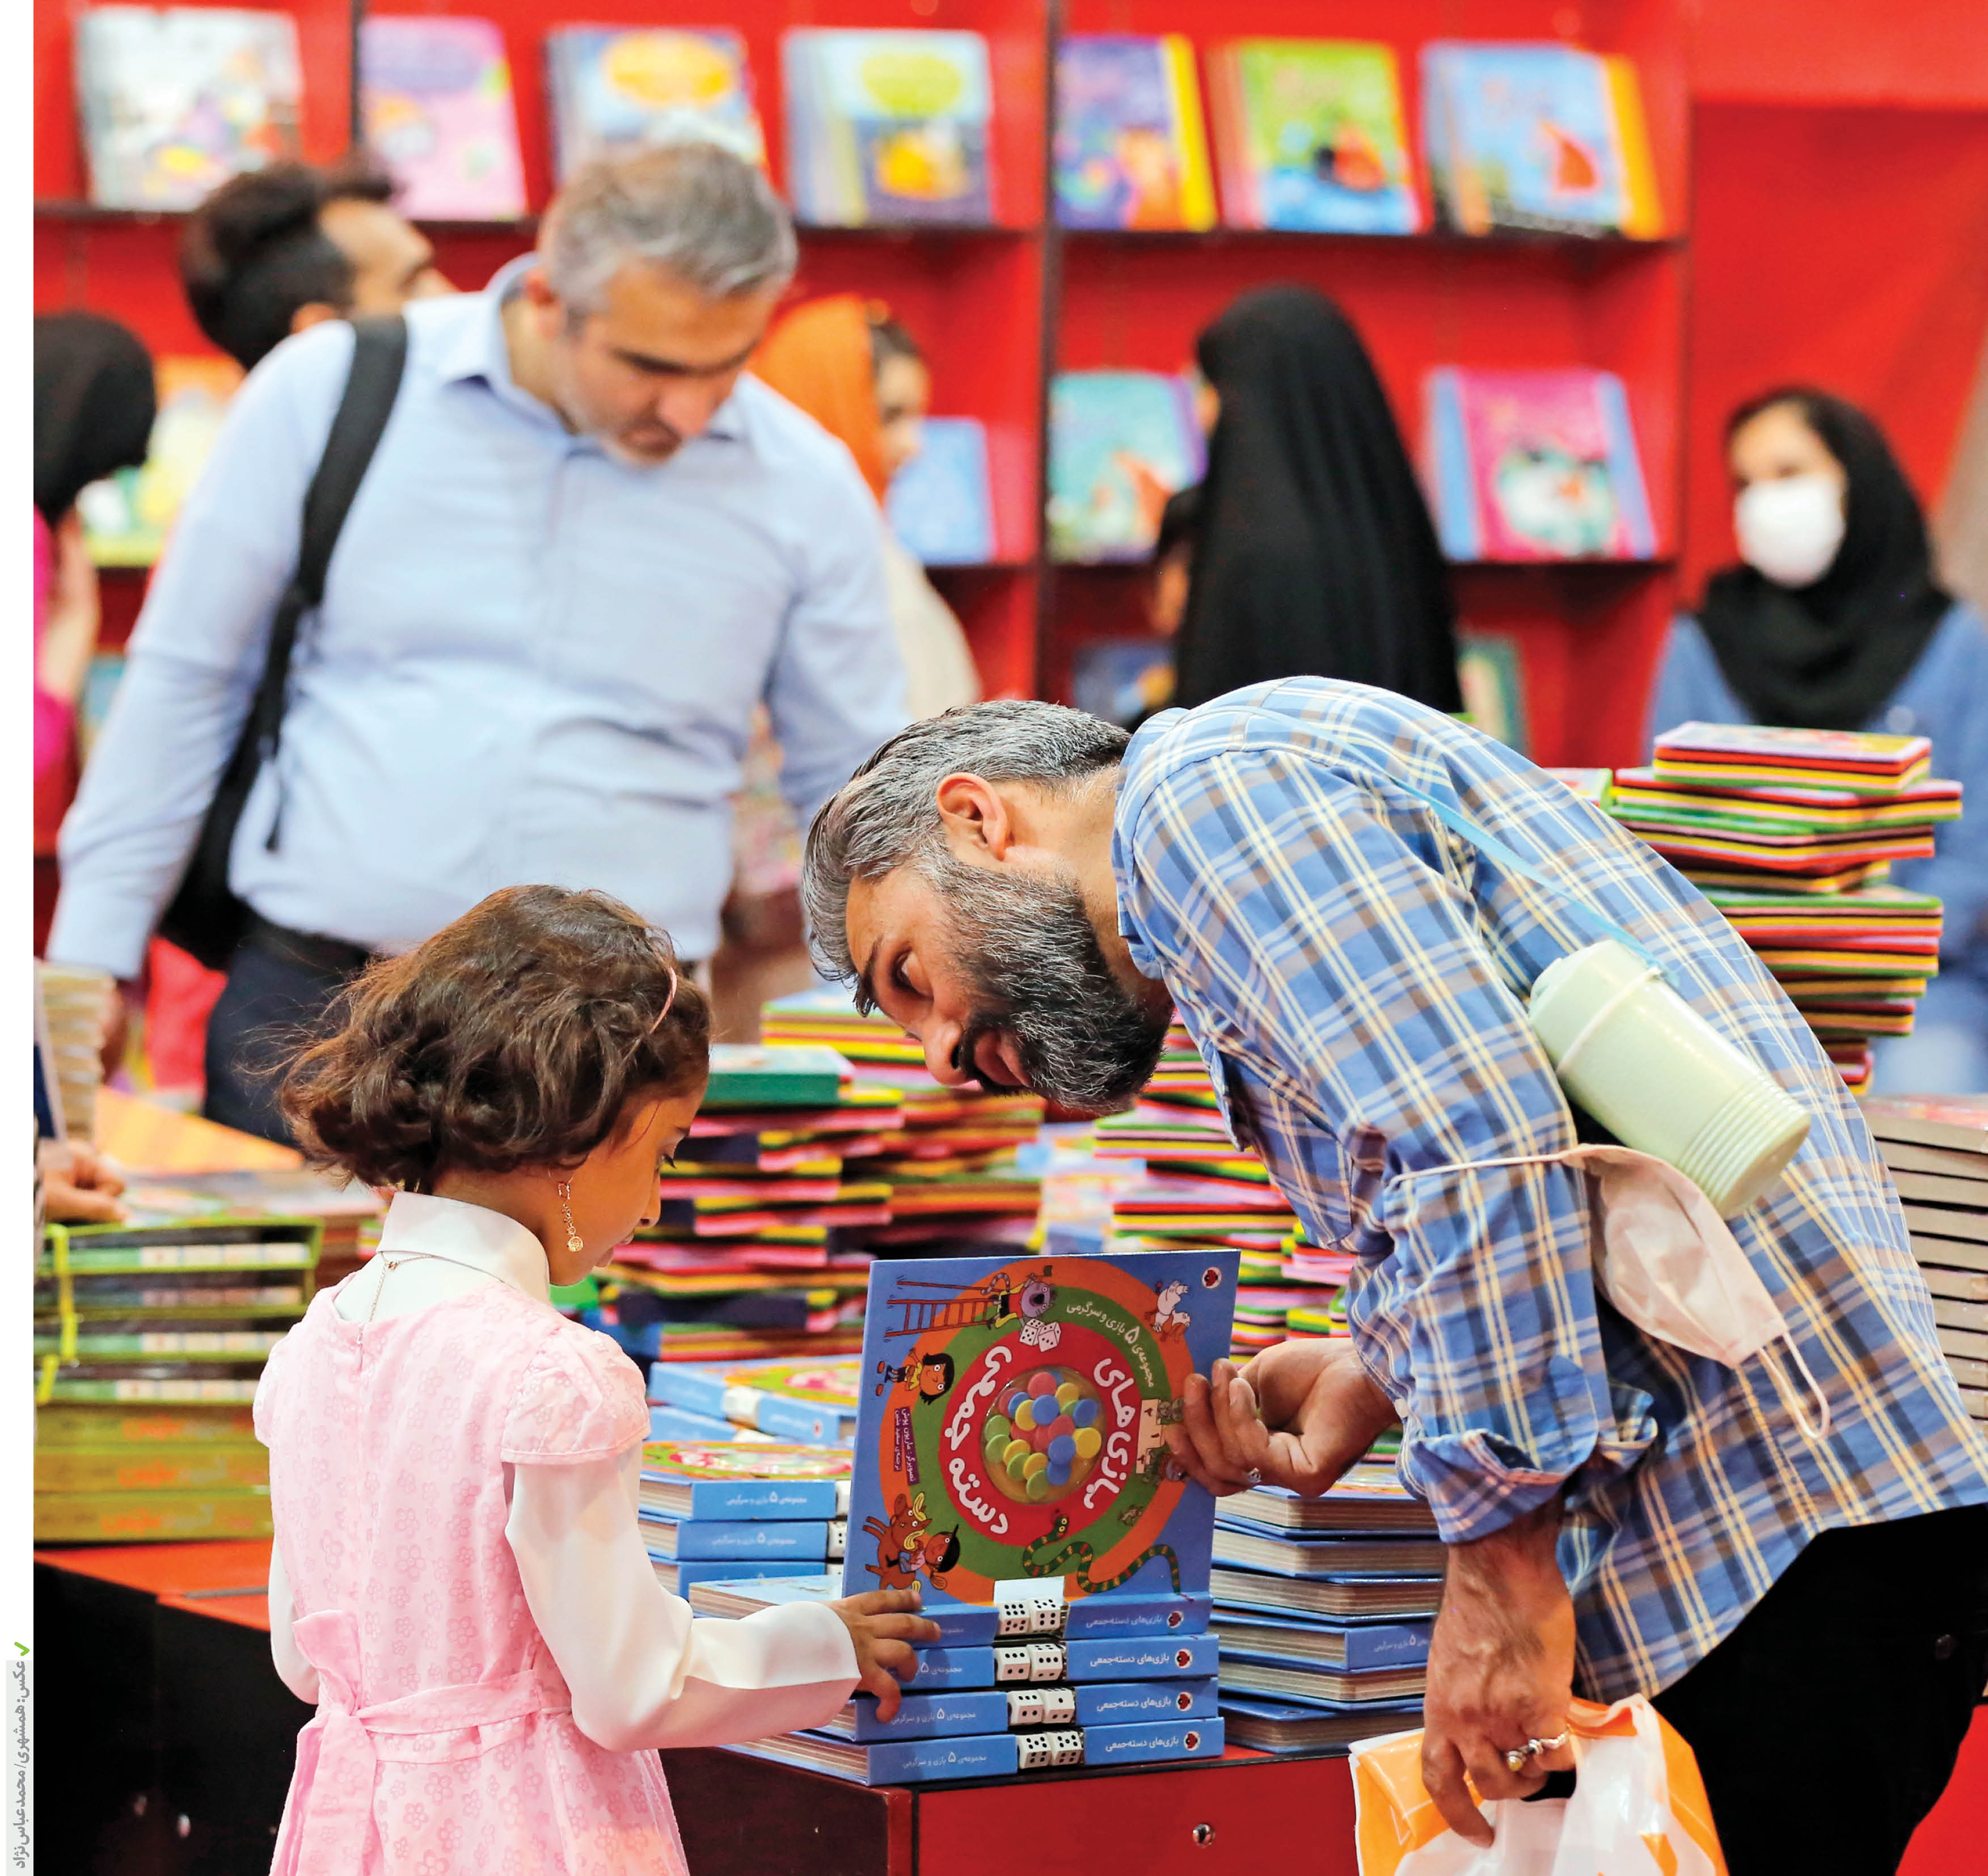 تهران مقاصد گردشگری متنوعی مرتبط با کتاب و کتابخوانی دارد